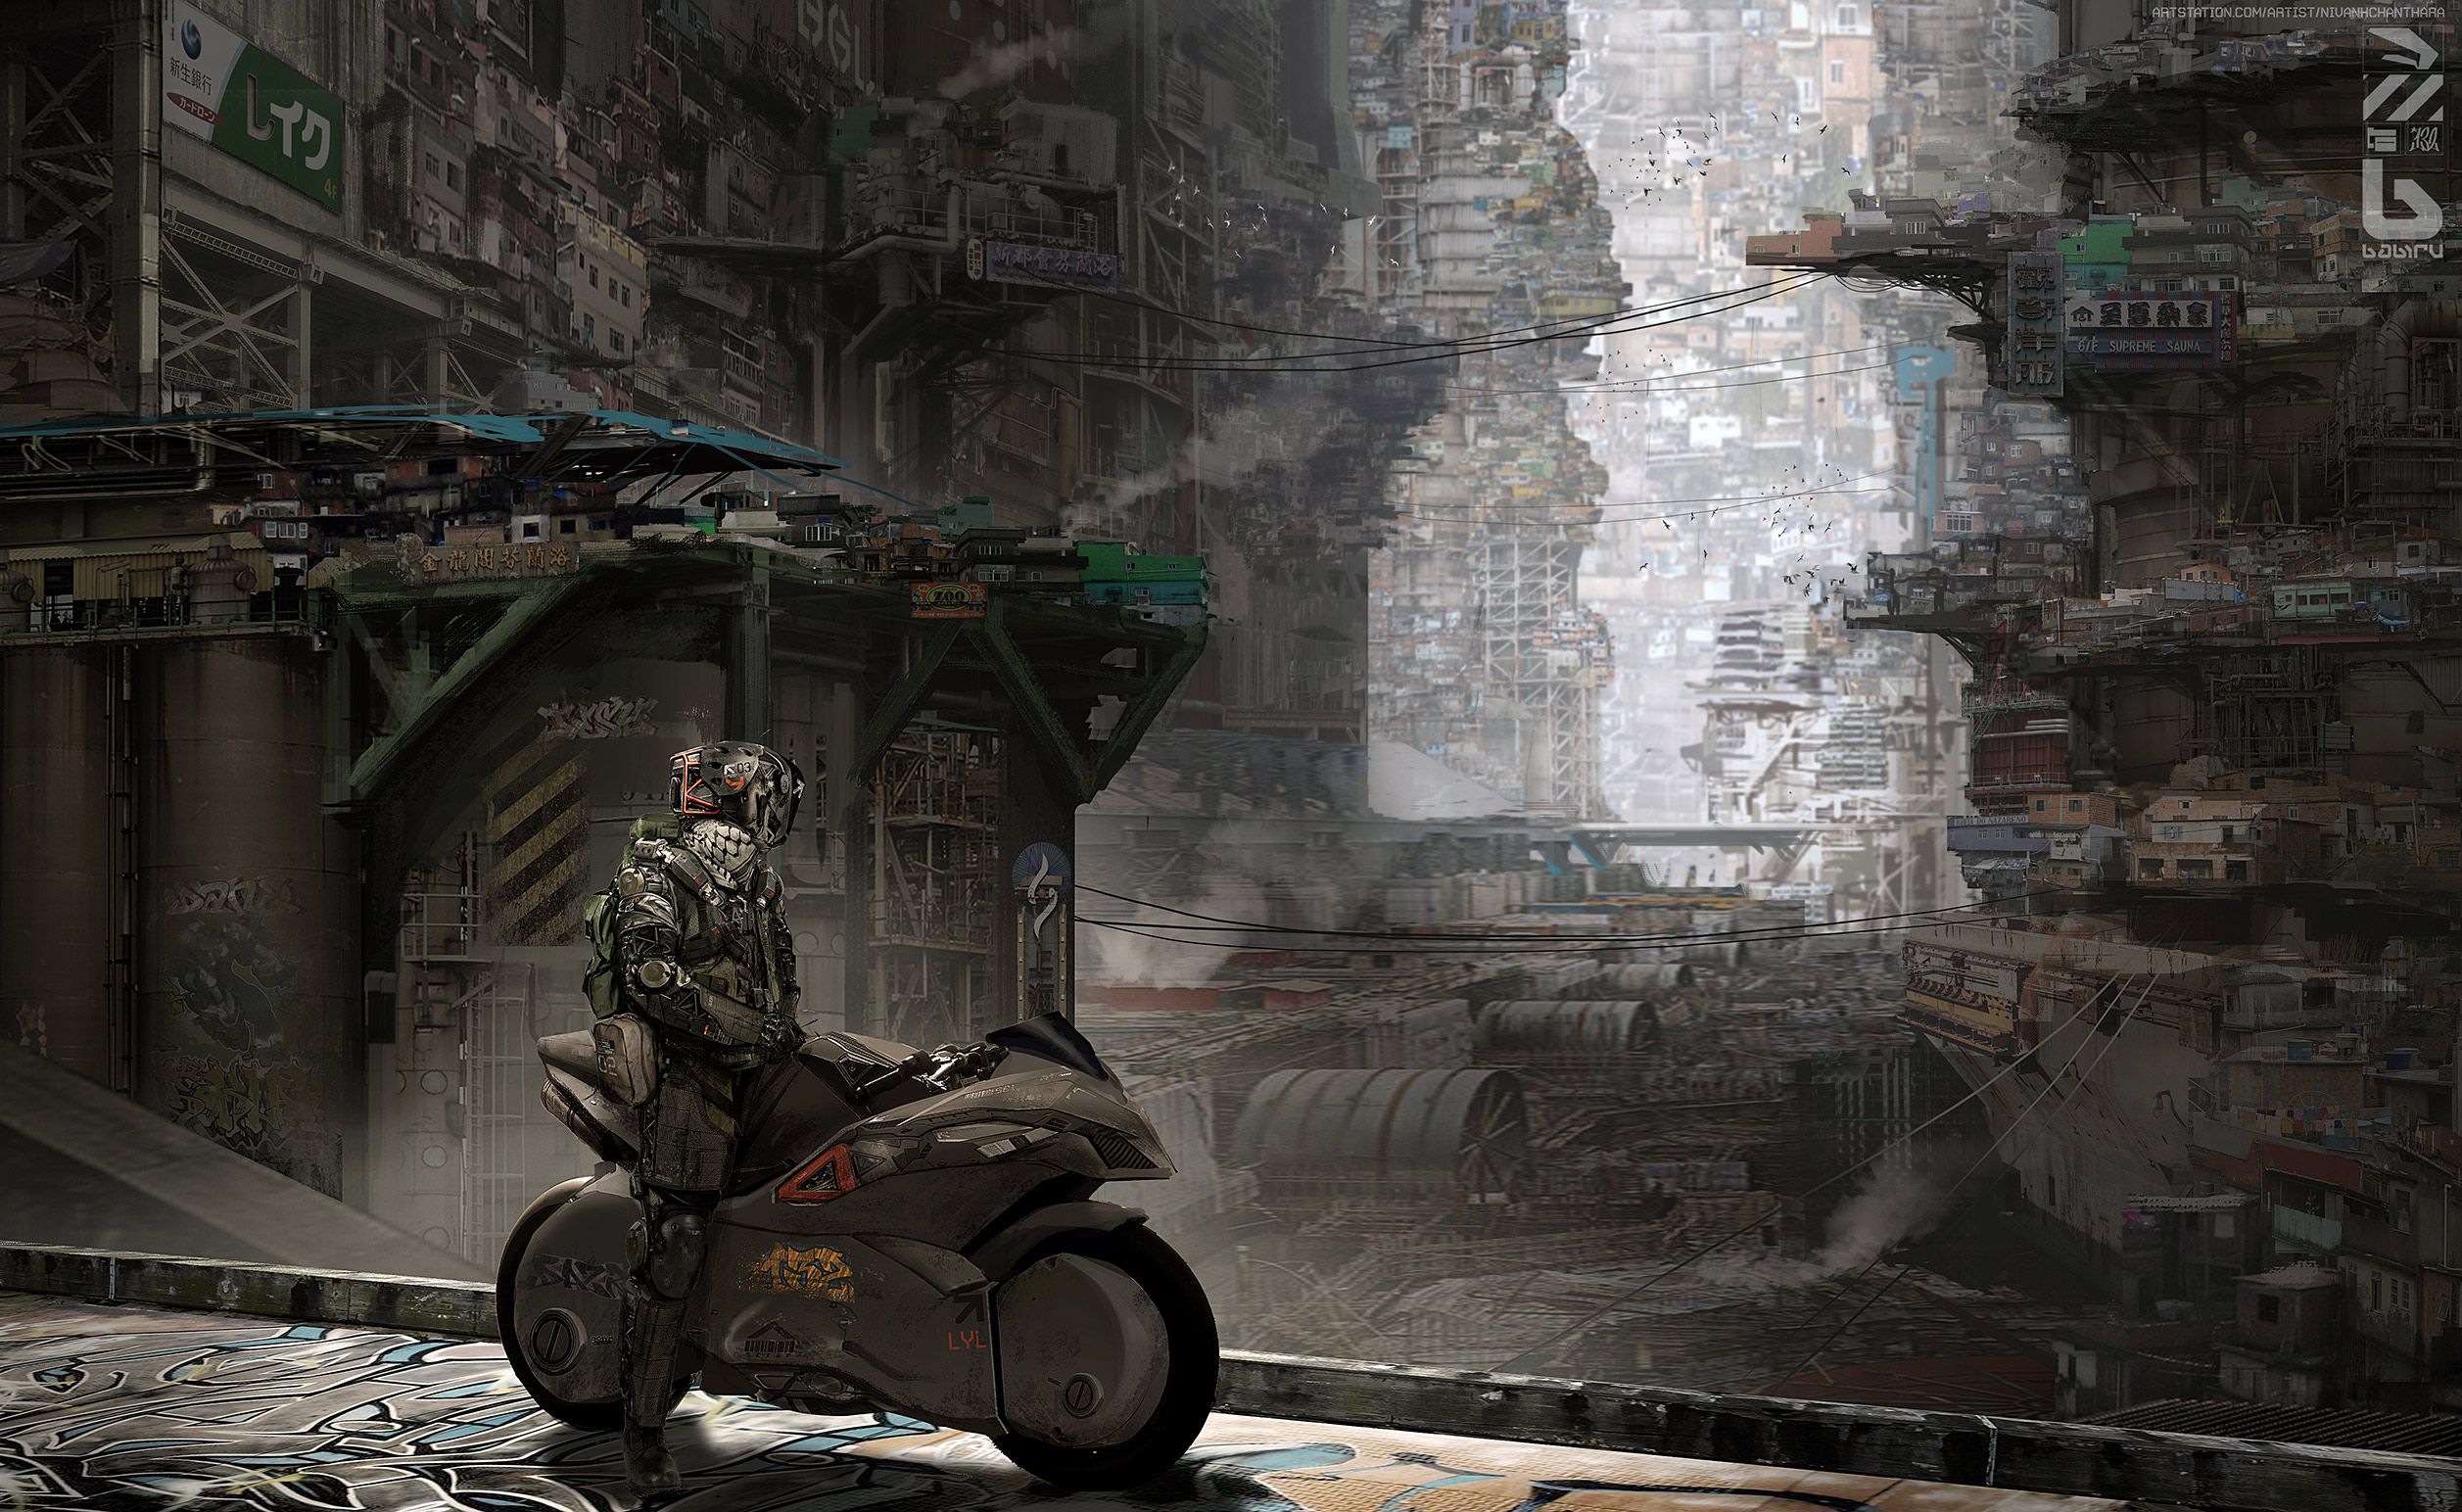 Futuristic Slum